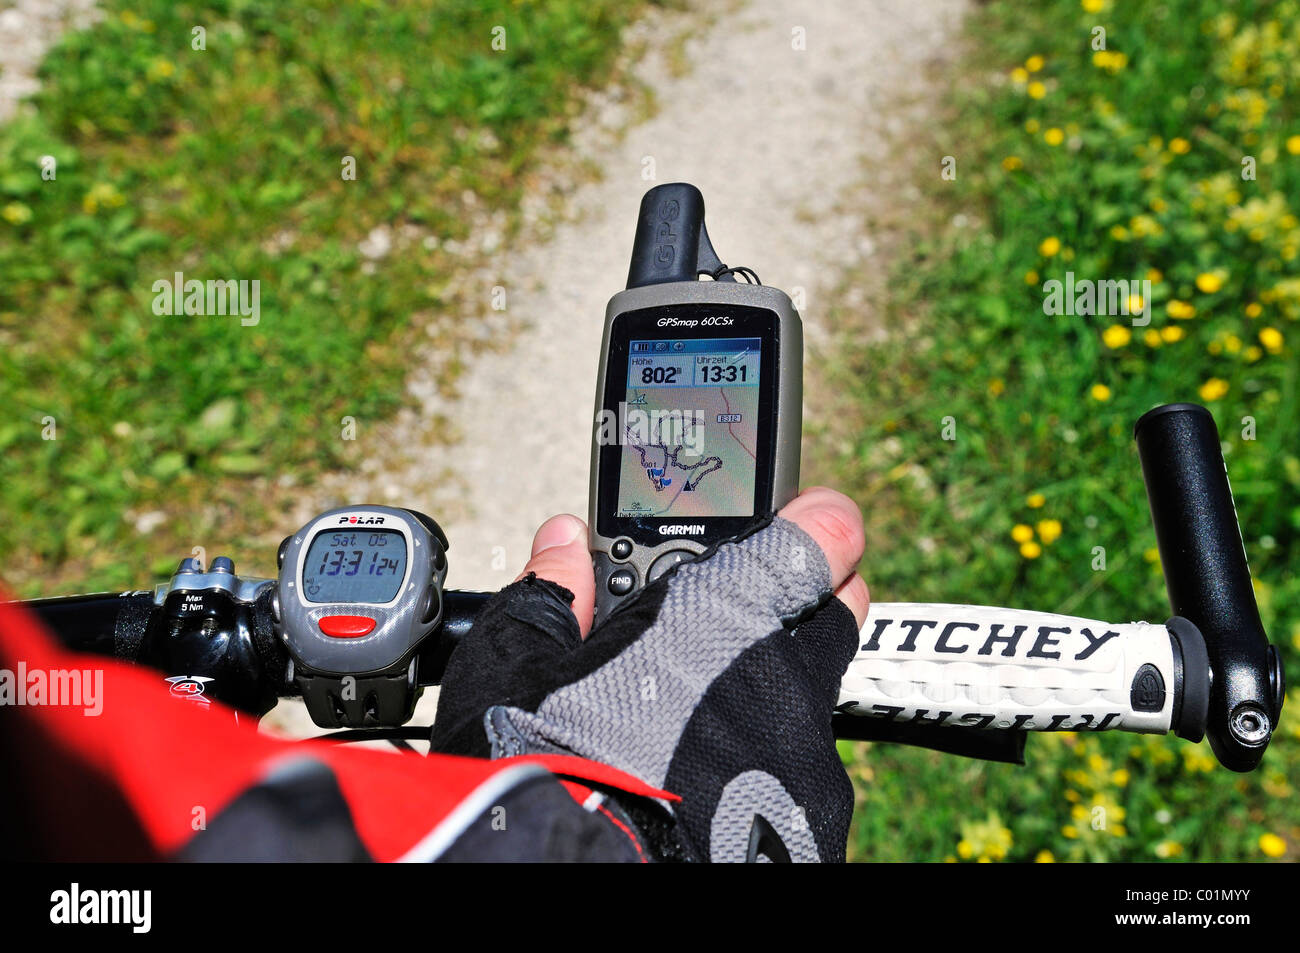 Mountainbiker mit einem GPS-Gerät am Lenker, Reit Im Winkl, Bayern, Deutschland, Europa Stockfoto